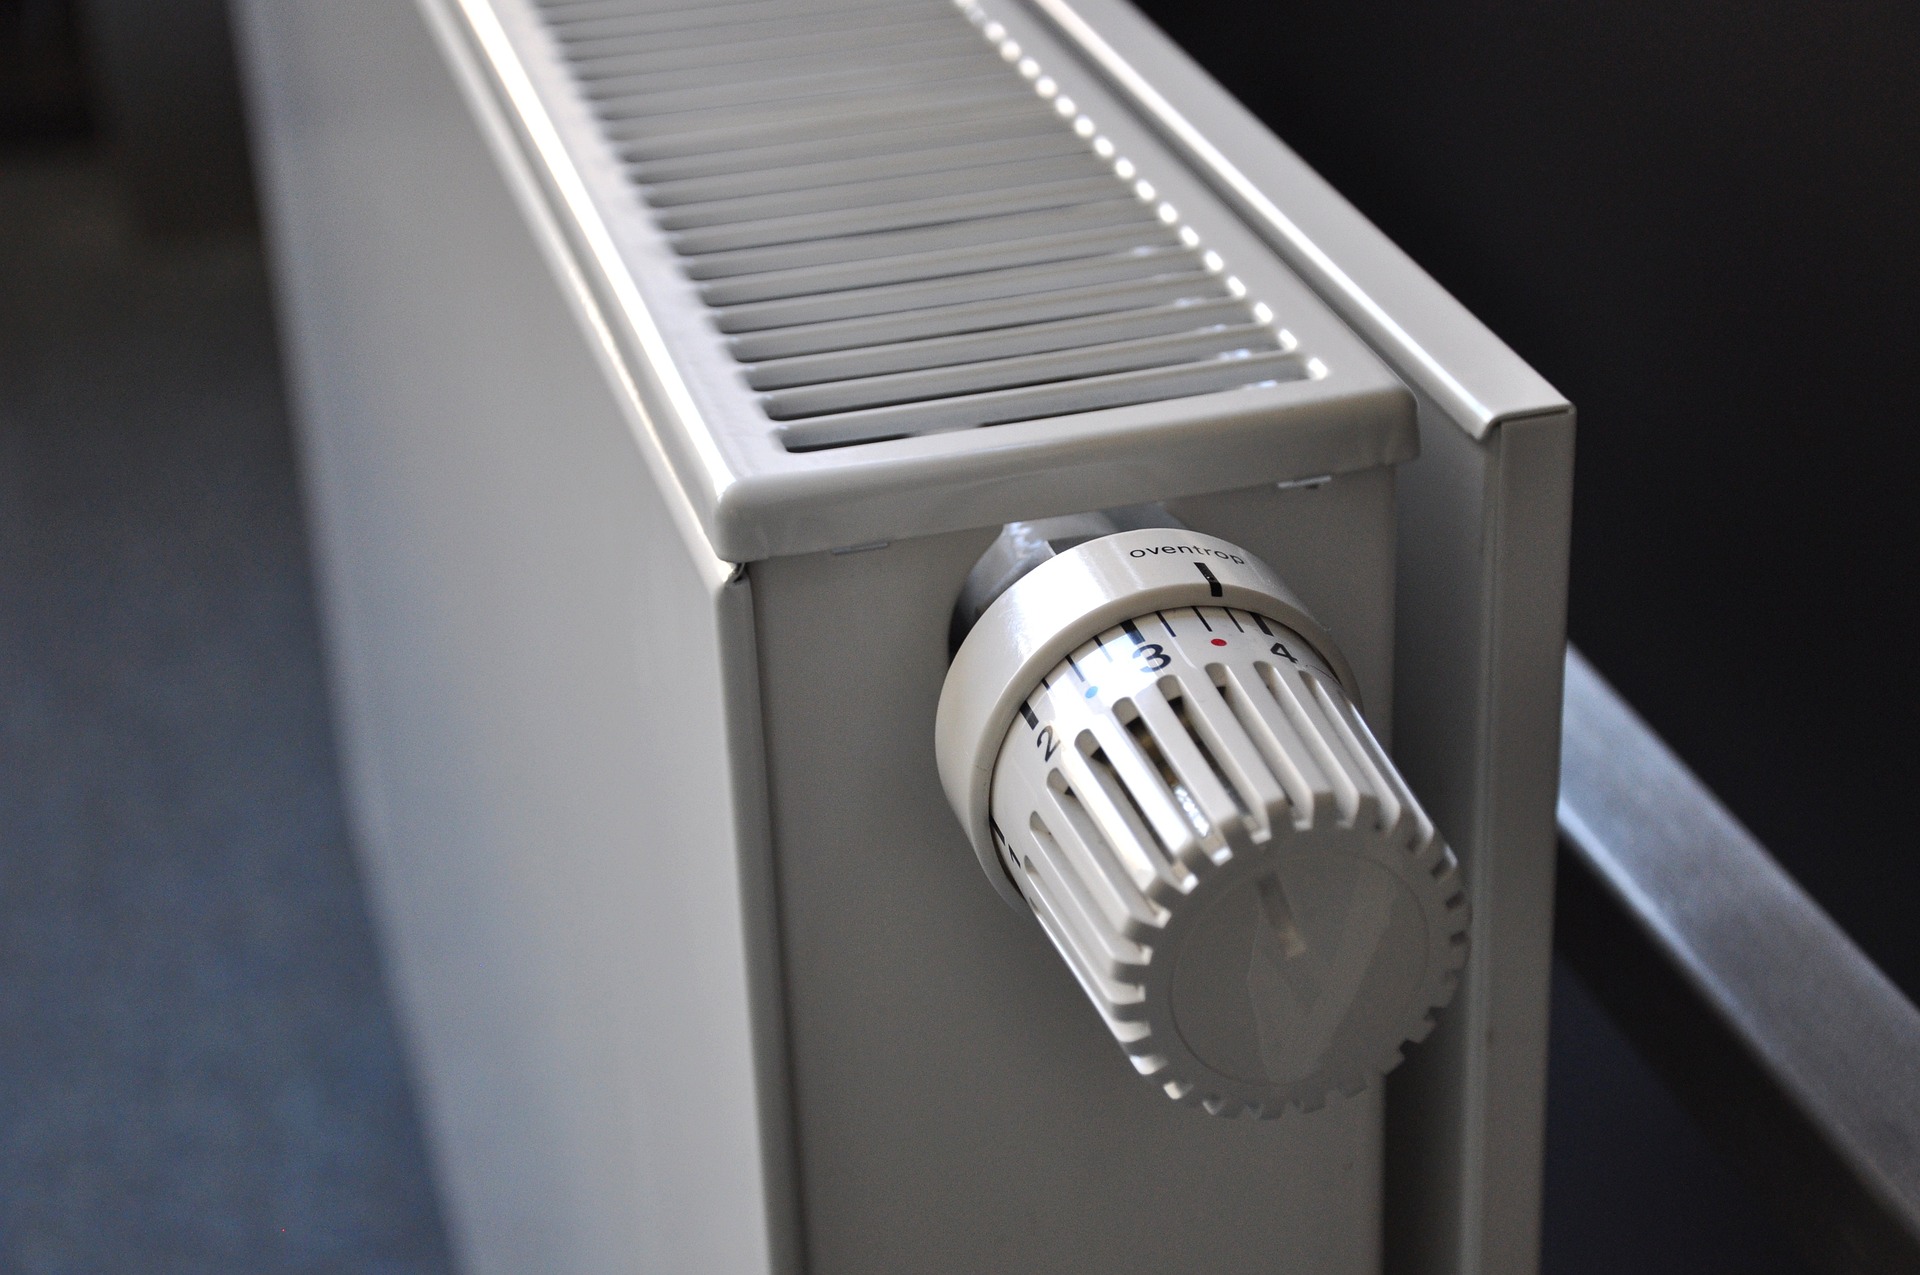 Πώς χρησιμοποιούμε τον θερμοστάτη για εξοικονόμηση ενέργειας